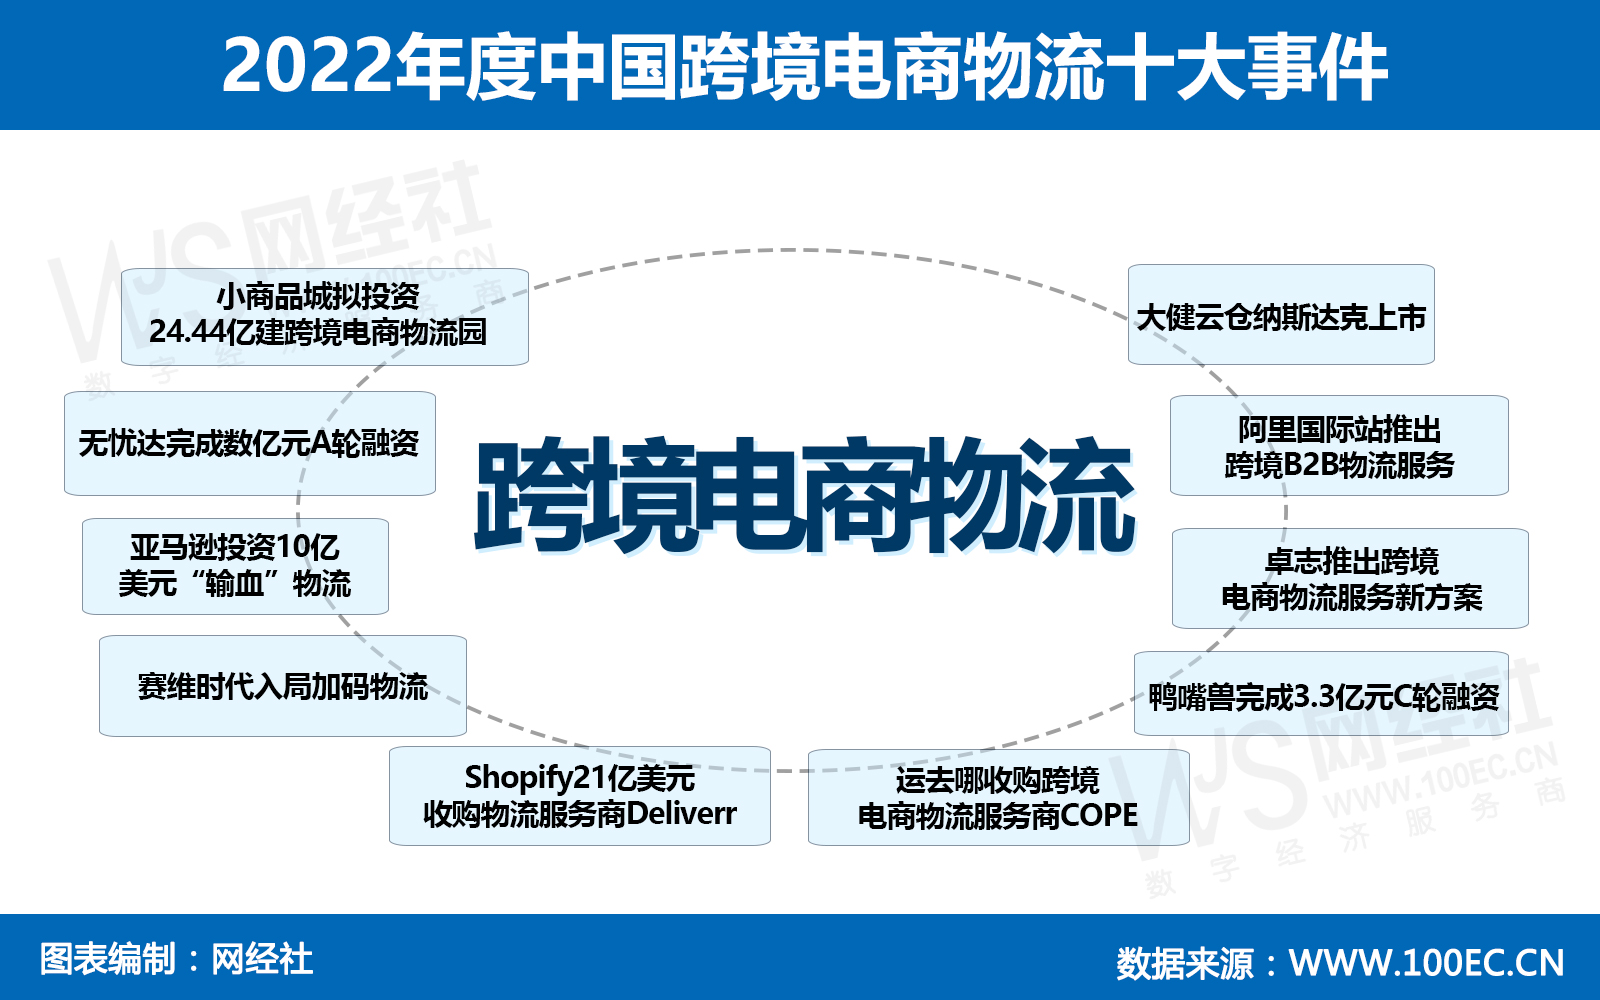 2022年度中国跨境电商物流十大事件(1).jpg